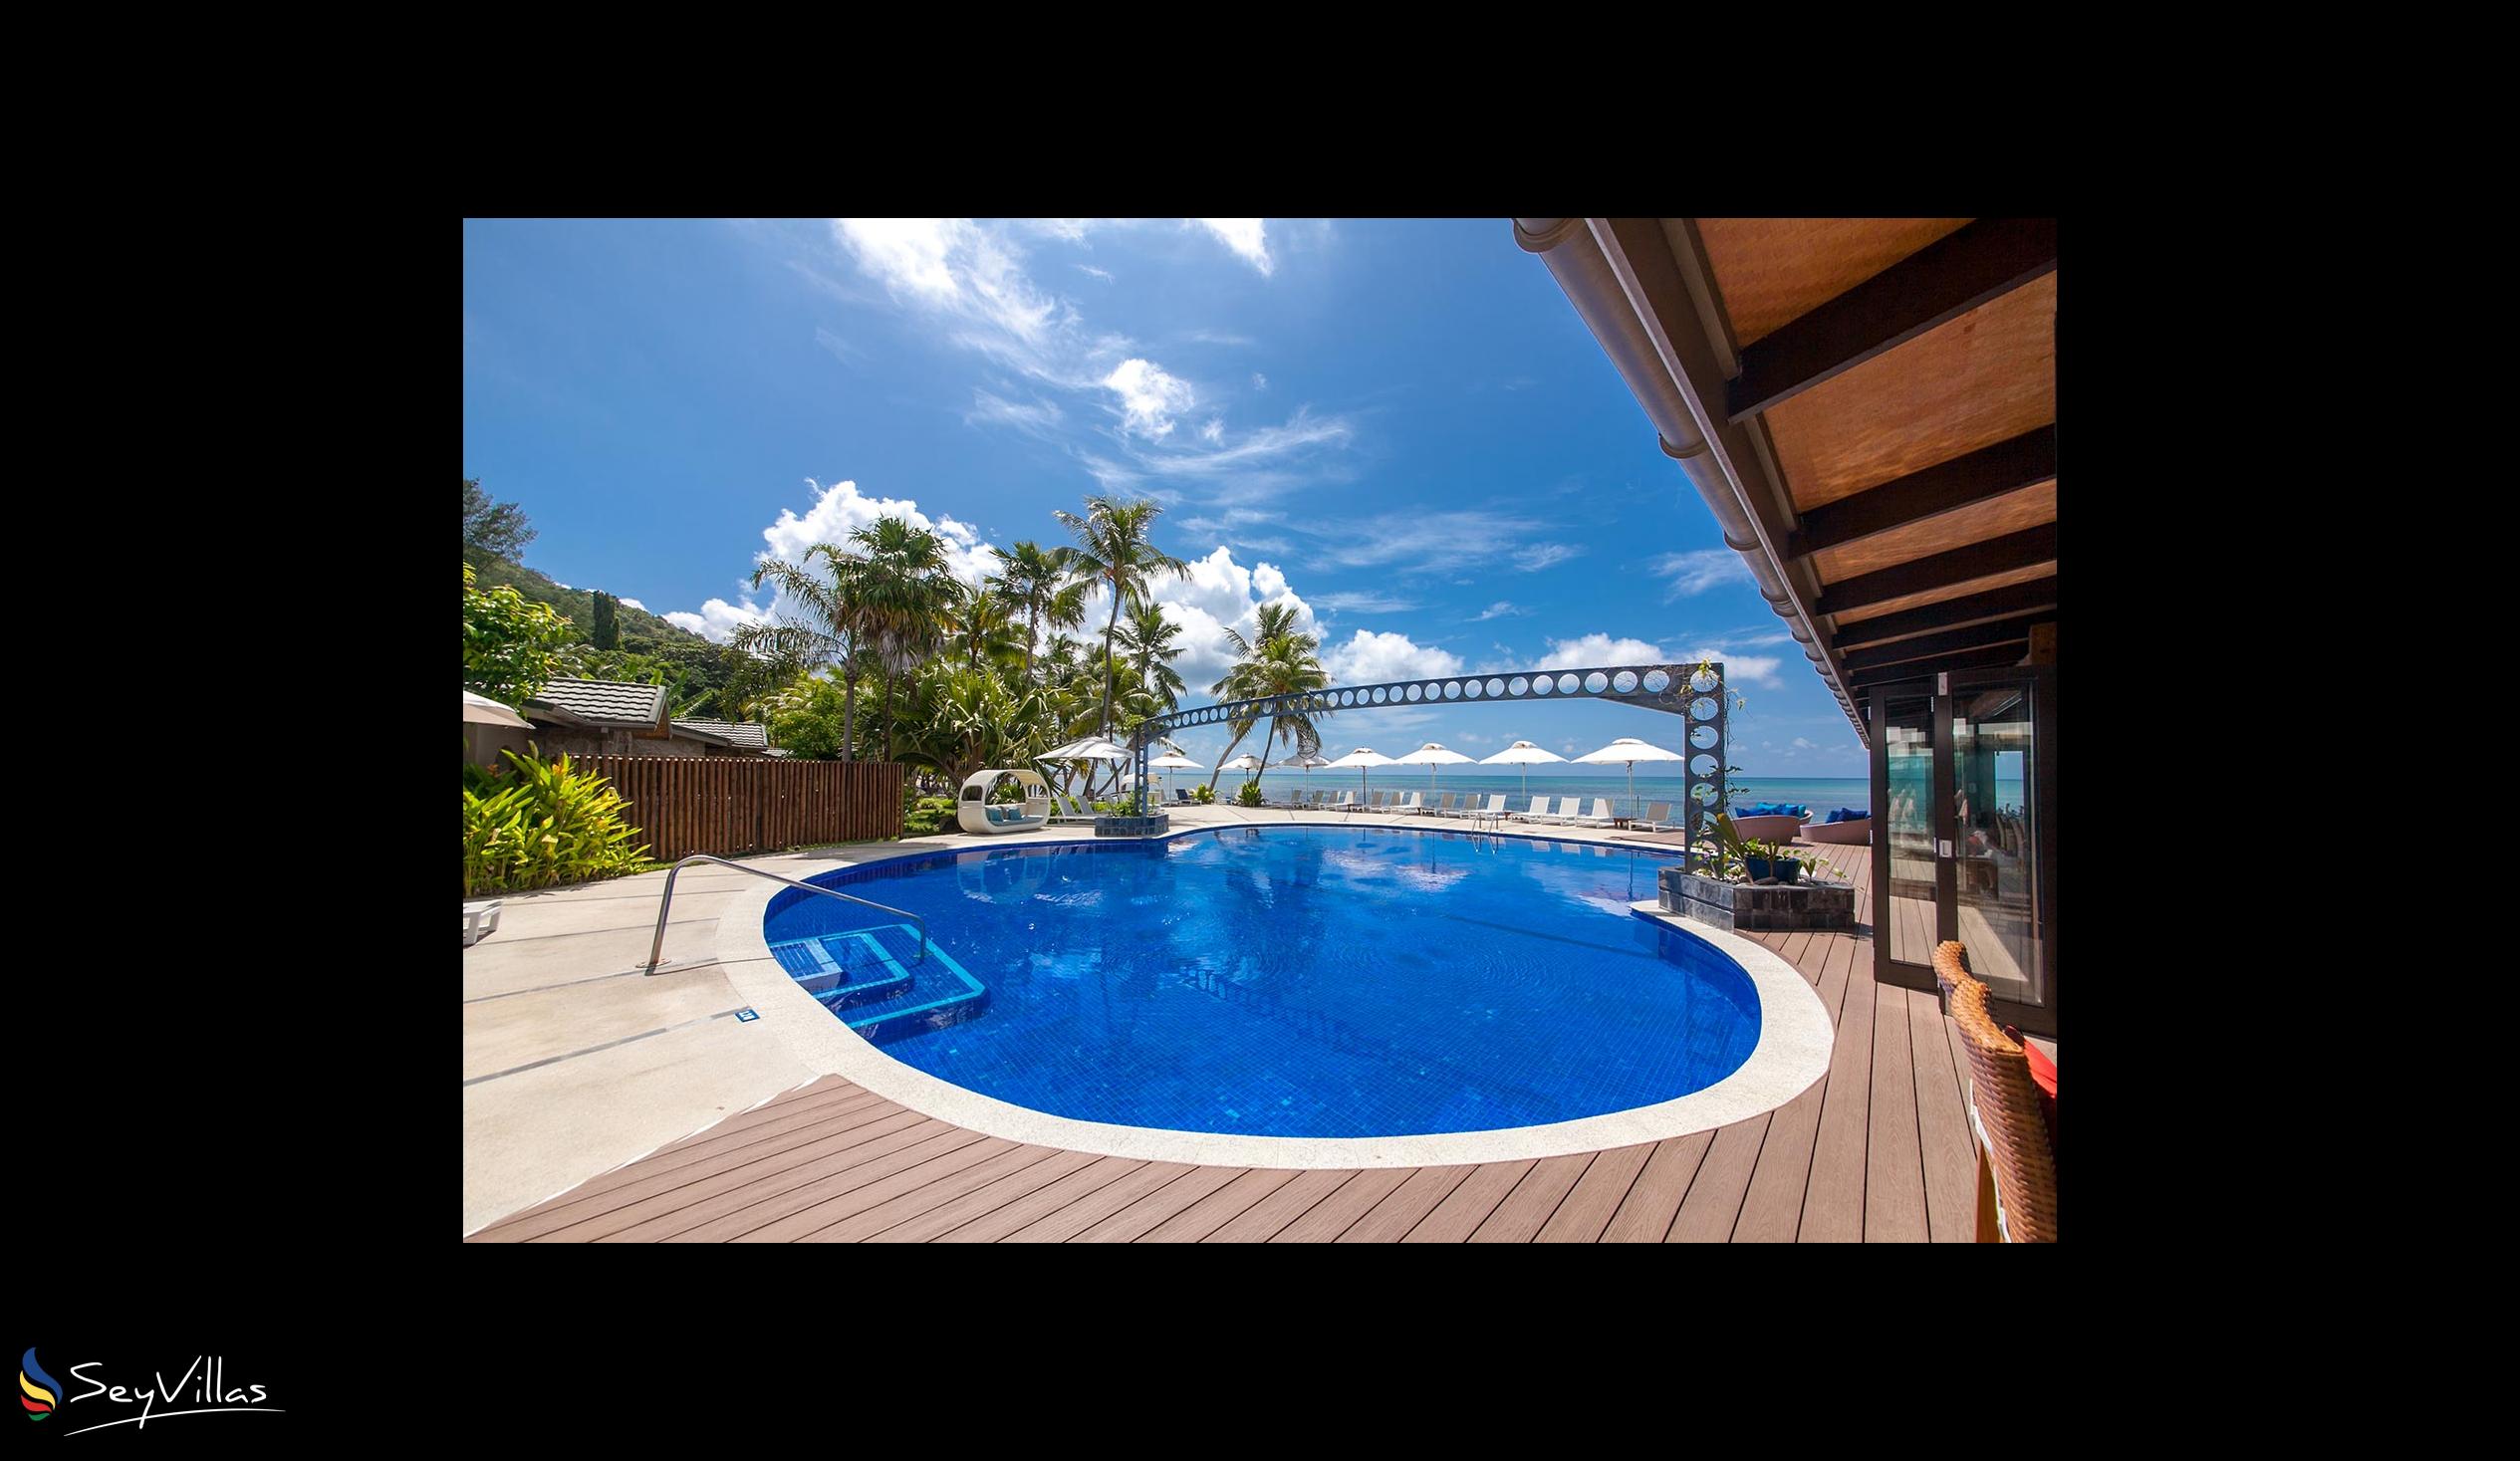 Foto 19: Coco de Mer & Black Parrot Suites - Aussenbereich - Praslin (Seychellen)